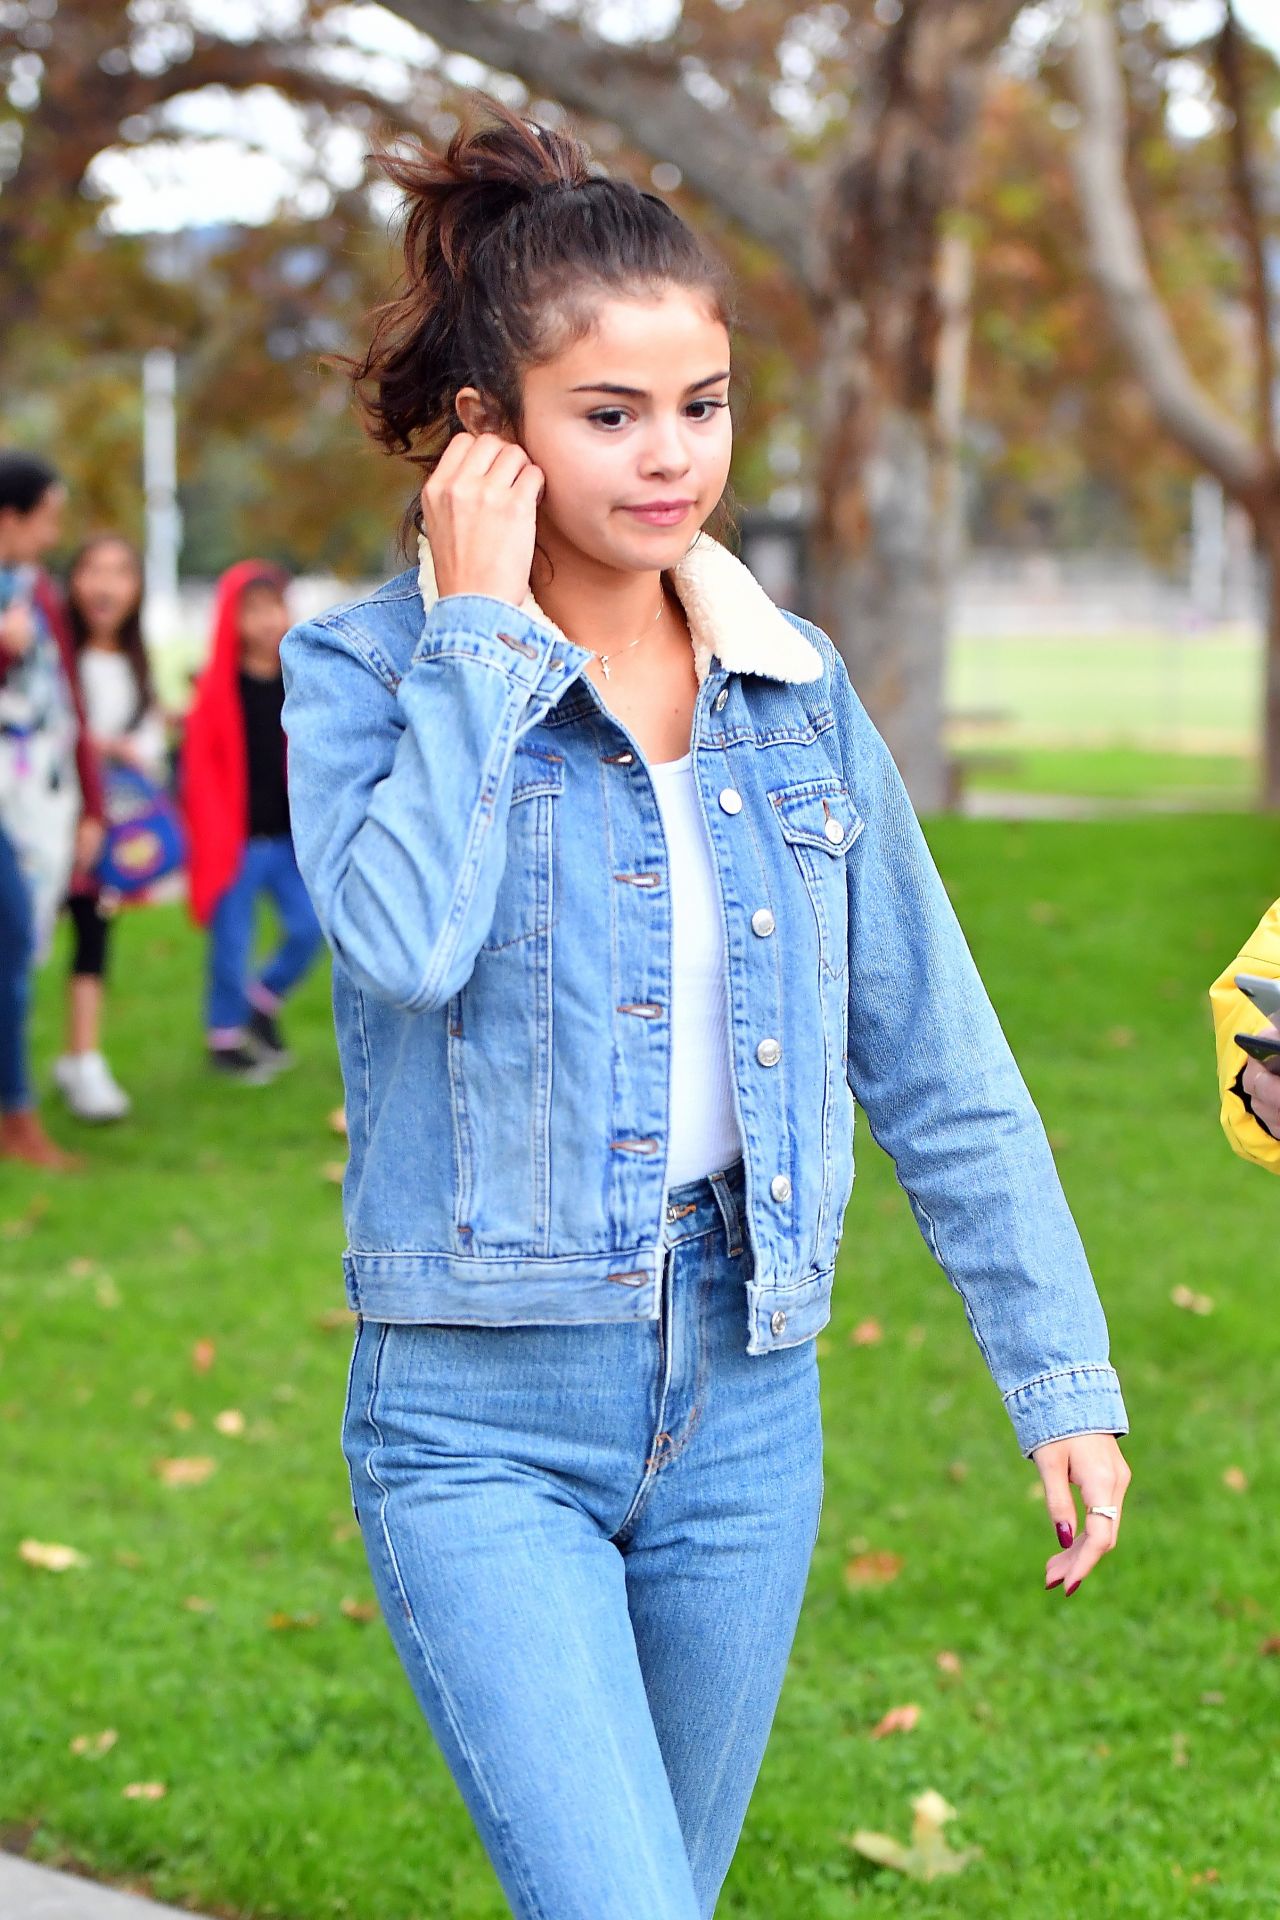 Selena Gomez Burbank November 14, 2019 – Star Style